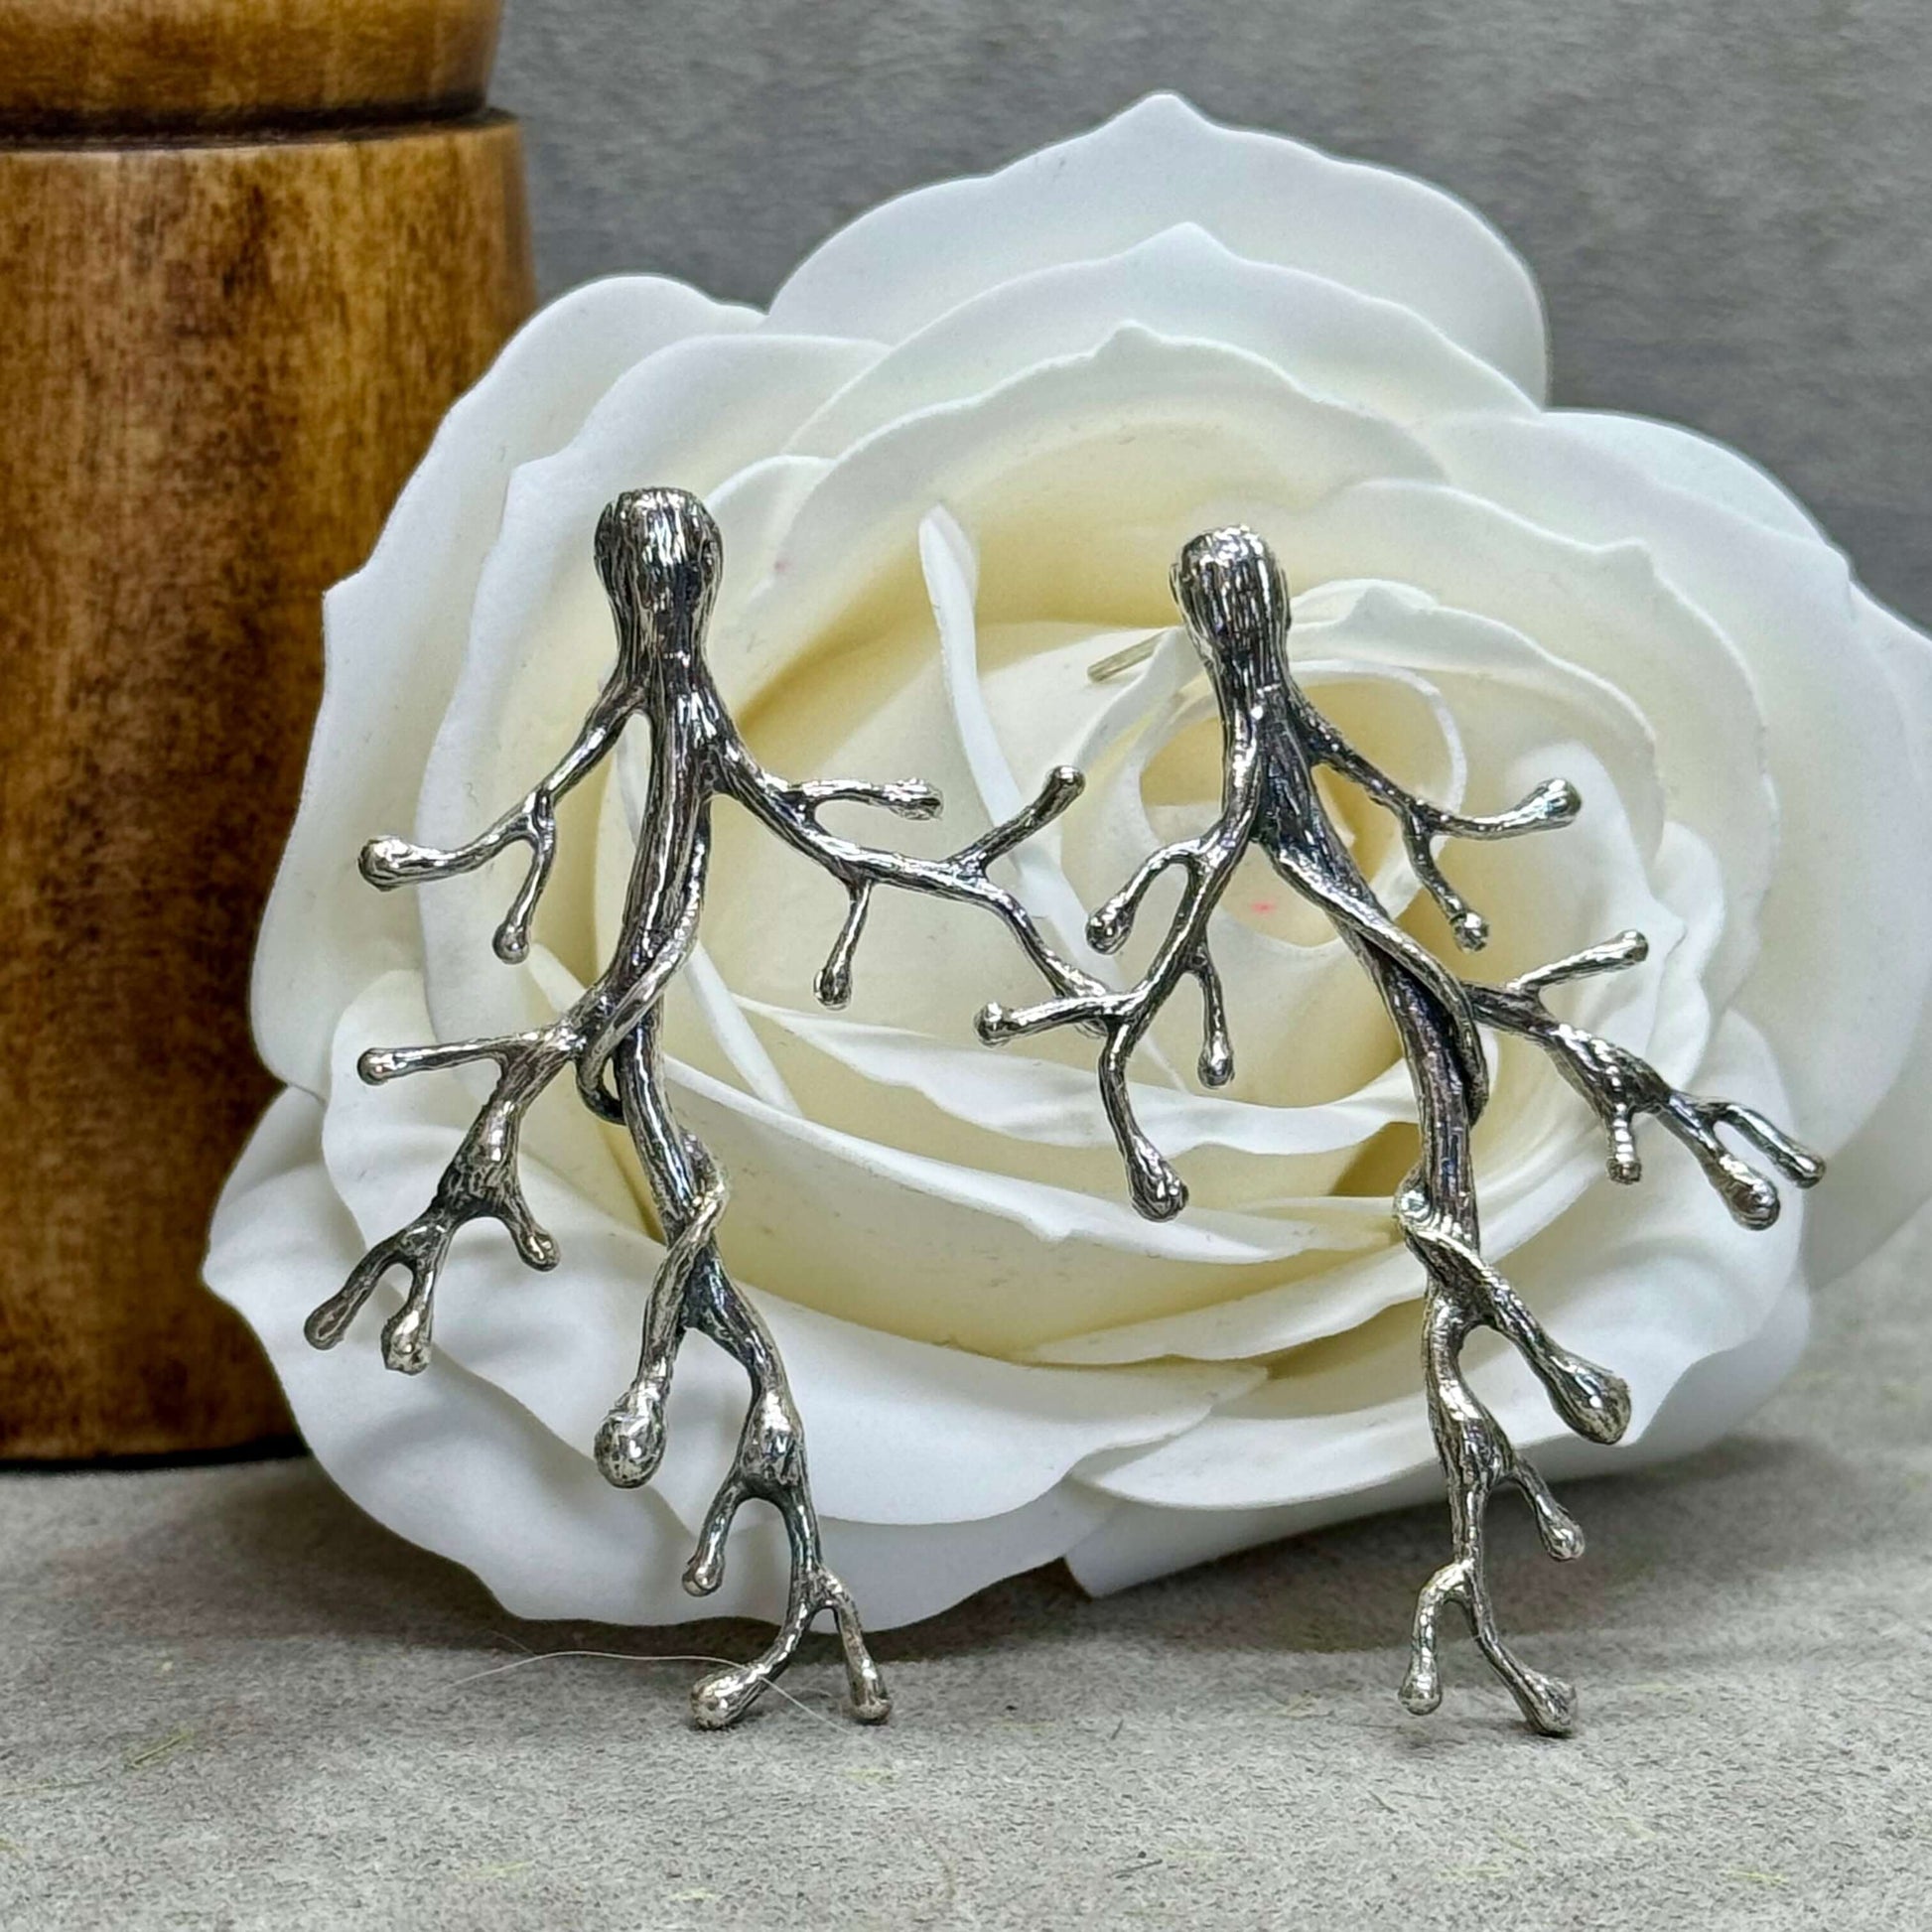 Majestic Sterling Silver Tree Branch Earrings - Twelve Silver Trees